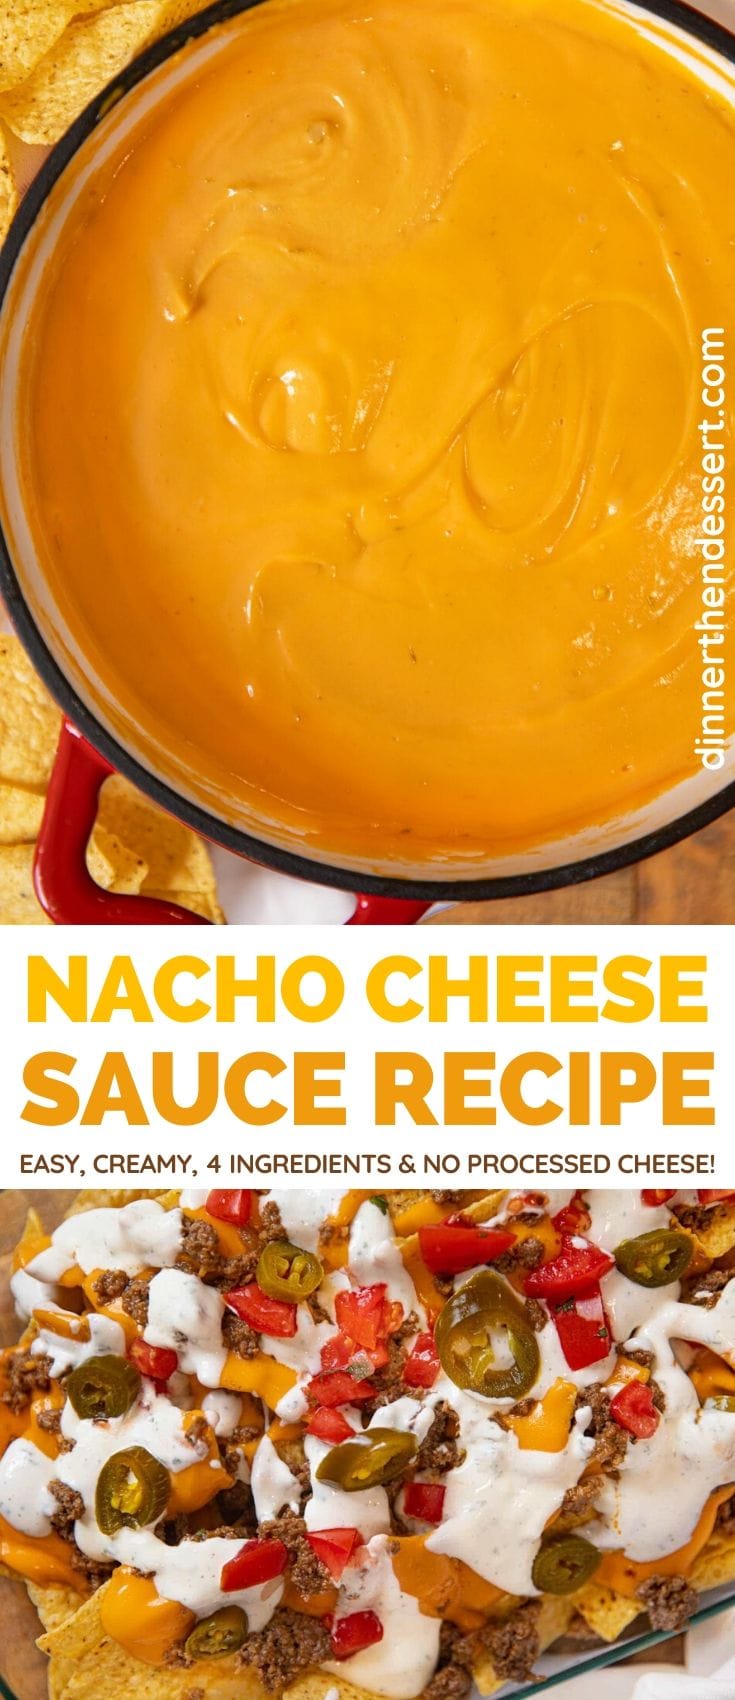 how do i make cheese sauce for nachos